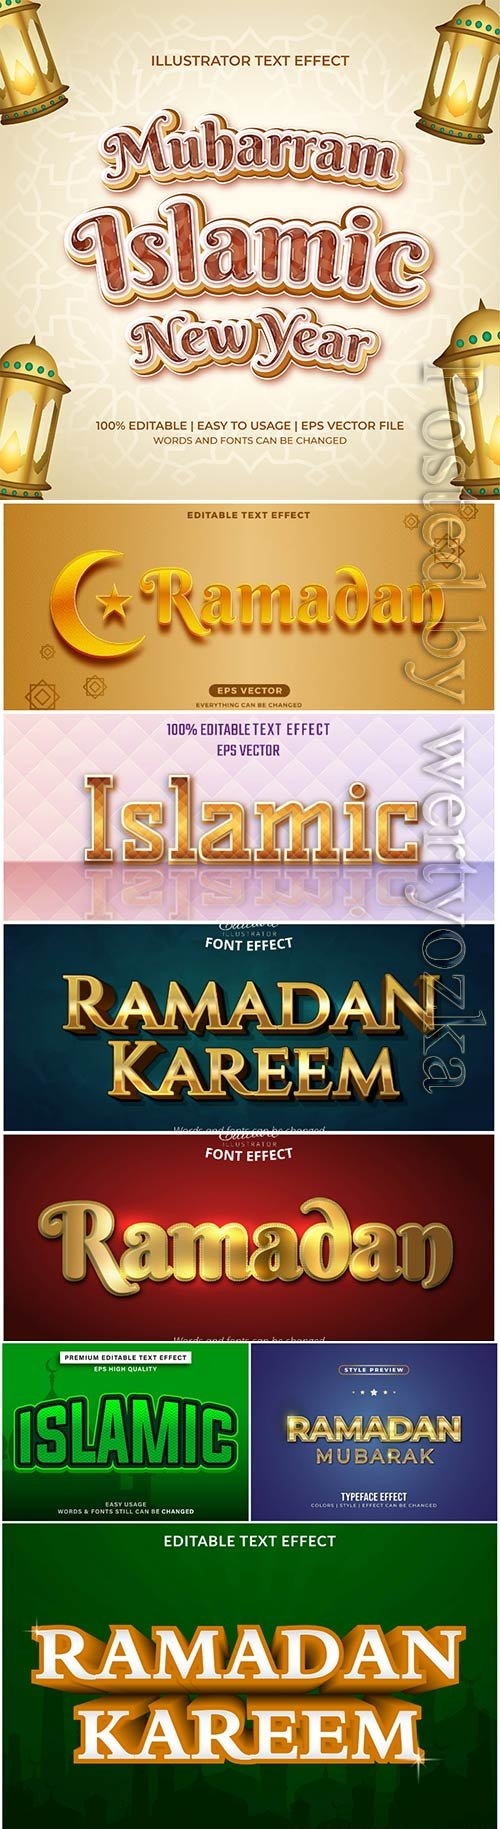 Islamic text effect editable vector